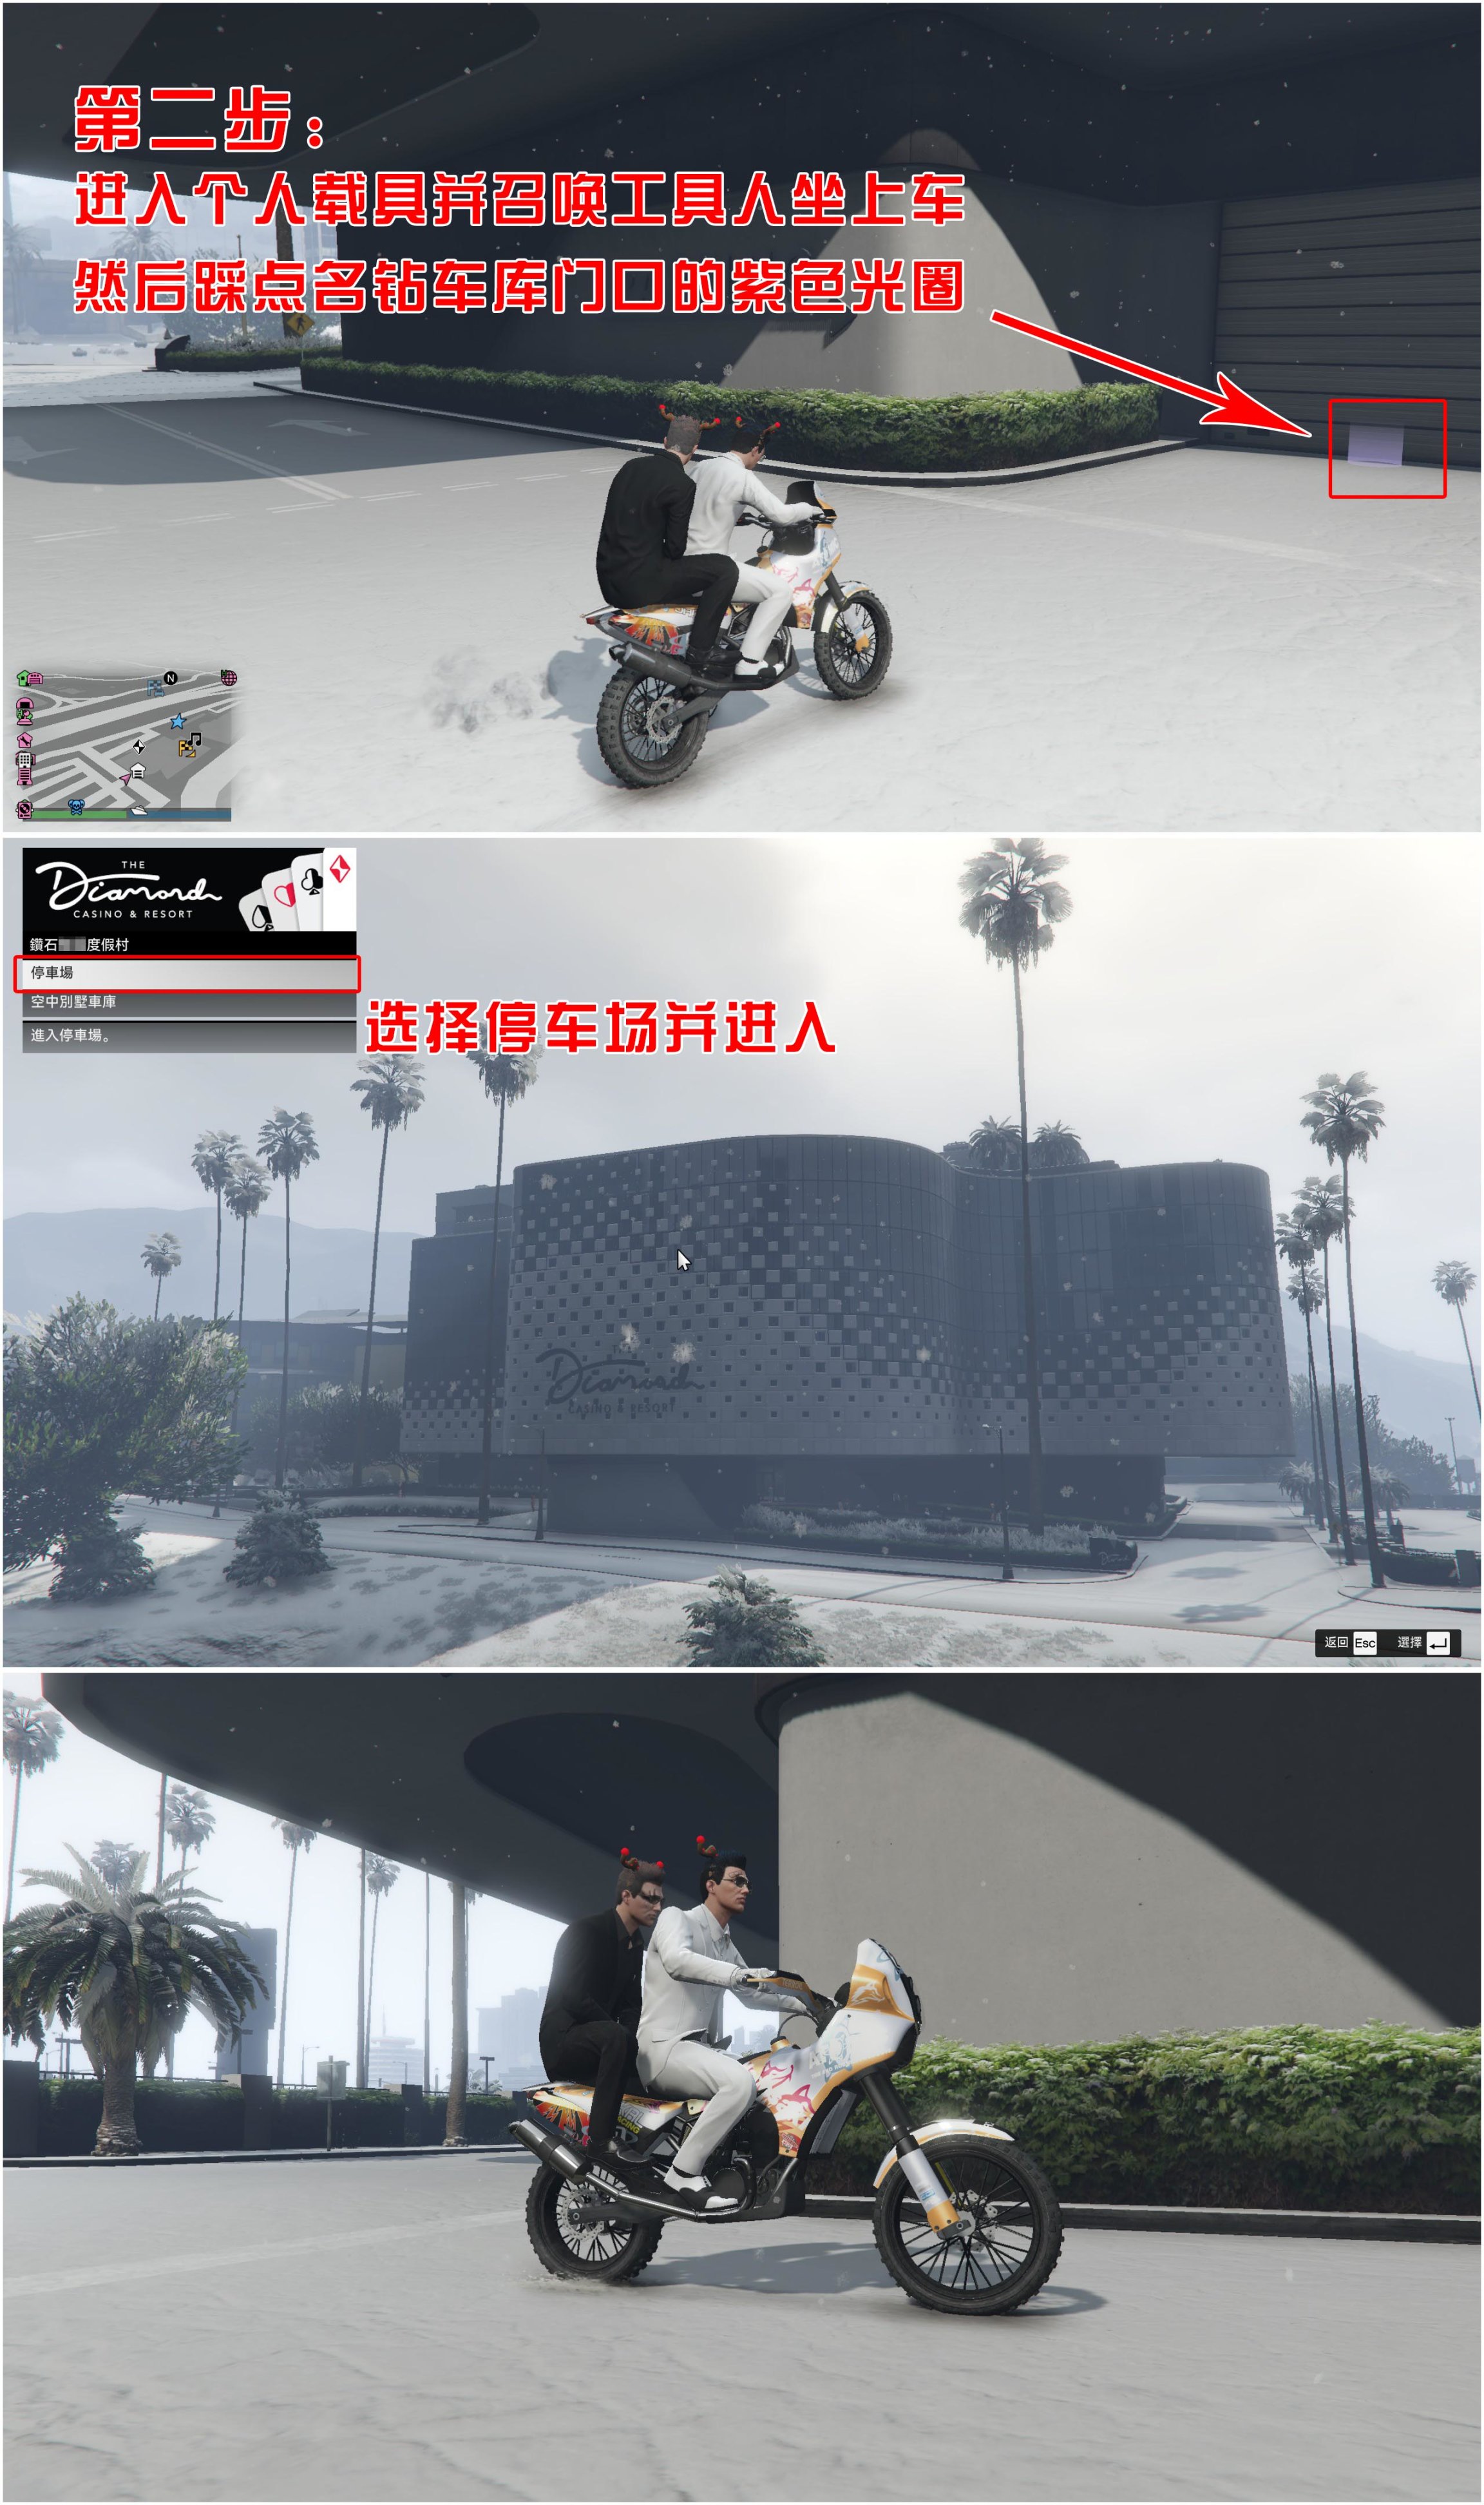 【侠盗猎车手5】GTA 在线模式攻略：获取载具隐藏涂装&复制车&变造外贸载具-第2张